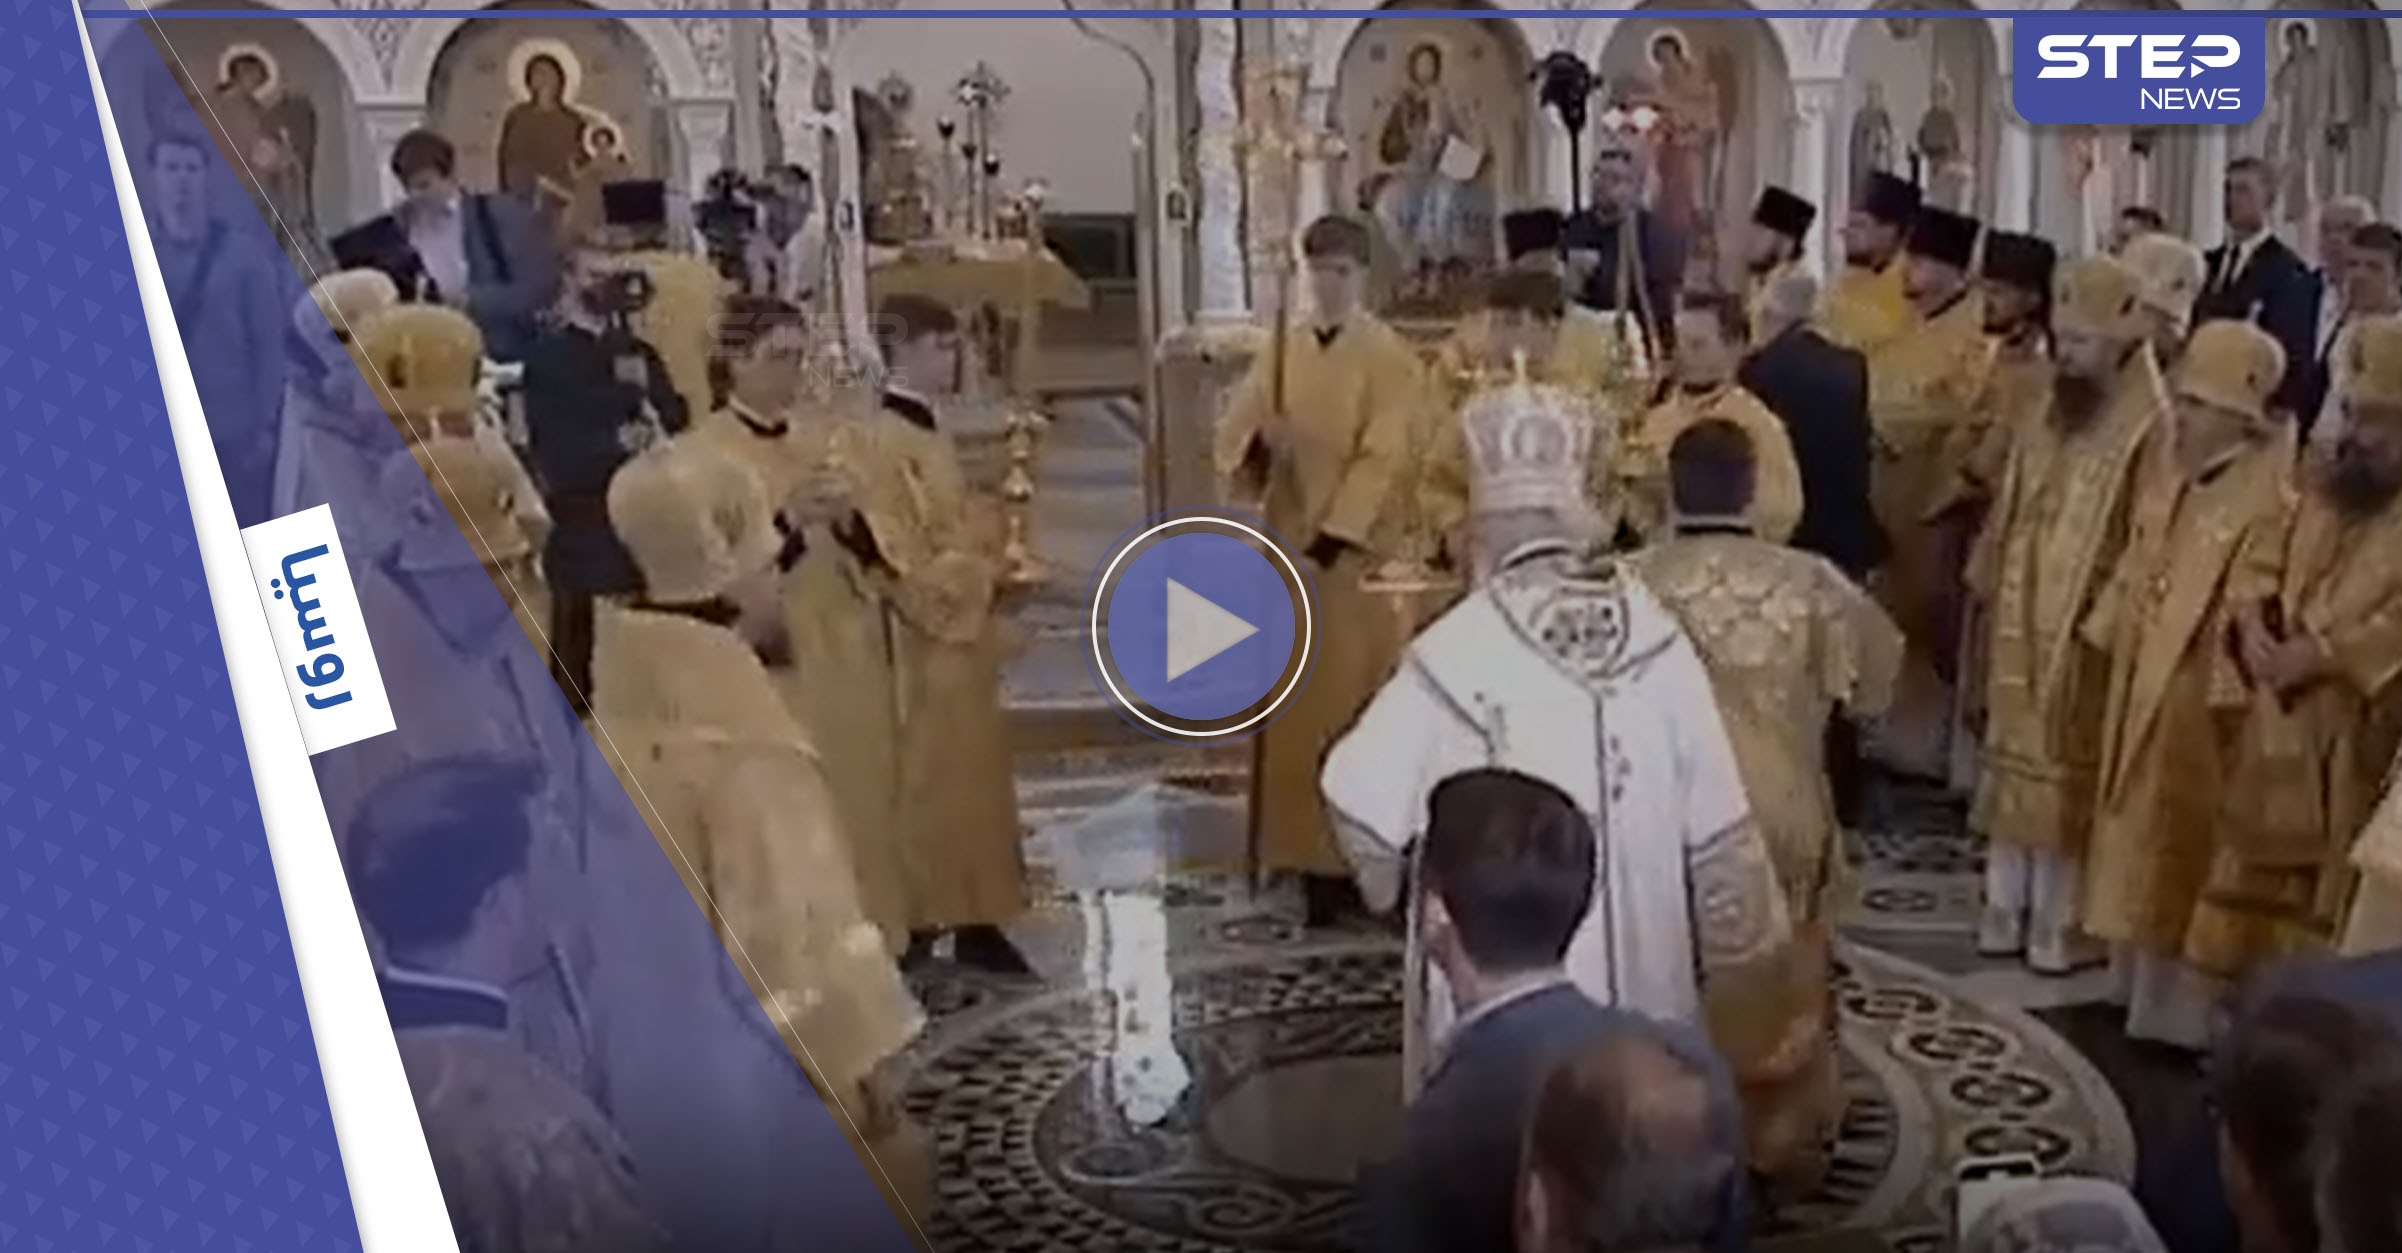  رئيس كنيسة روسي ينزلق ويسقط أمام الحضور